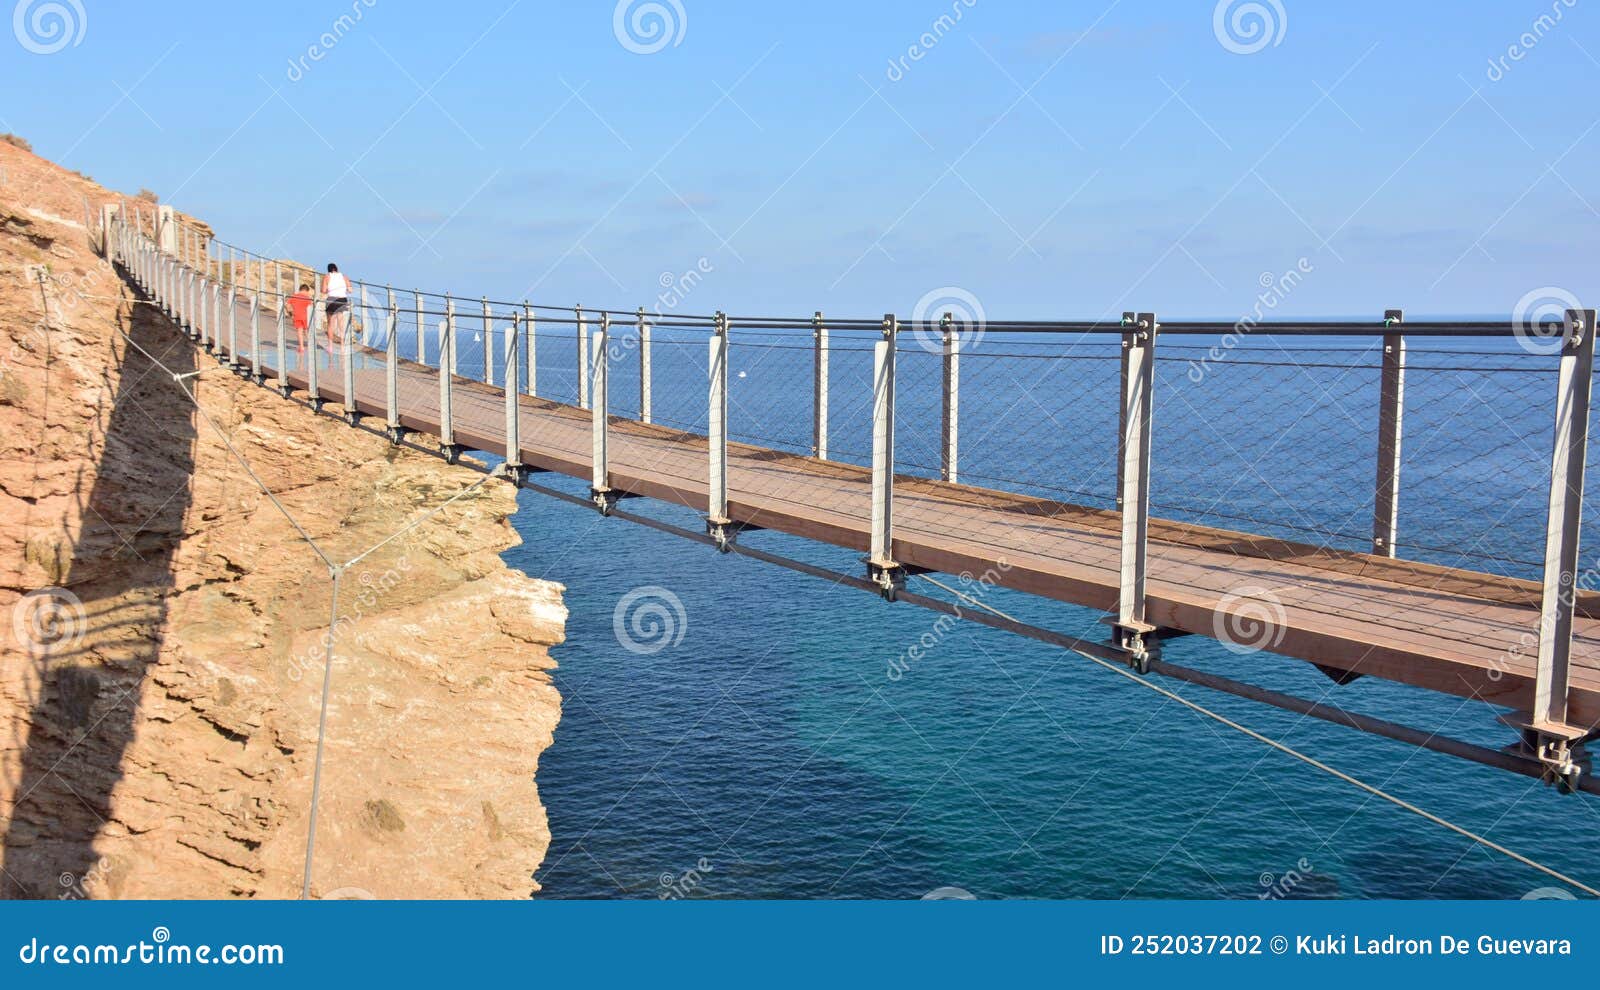 suspension bridge in torrenueva beach, granada